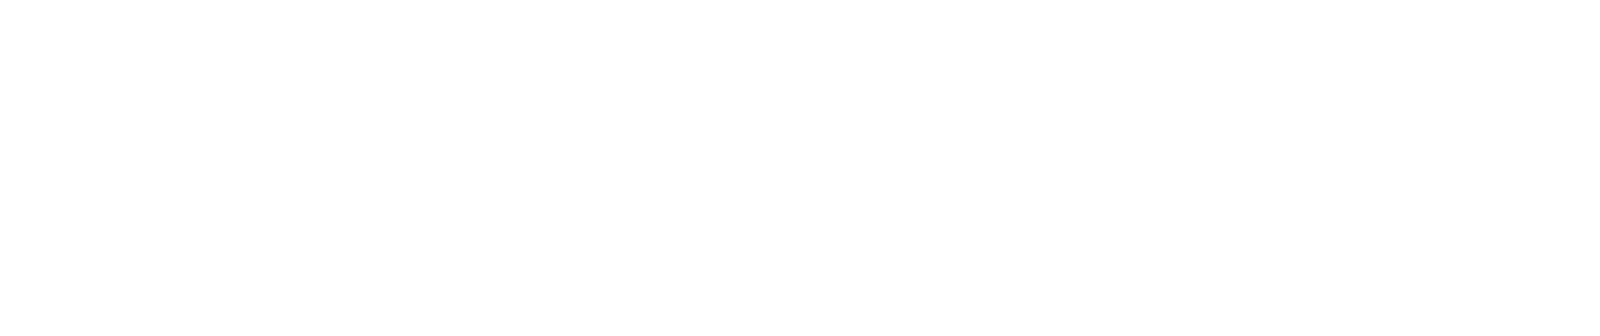 ahmad-logo